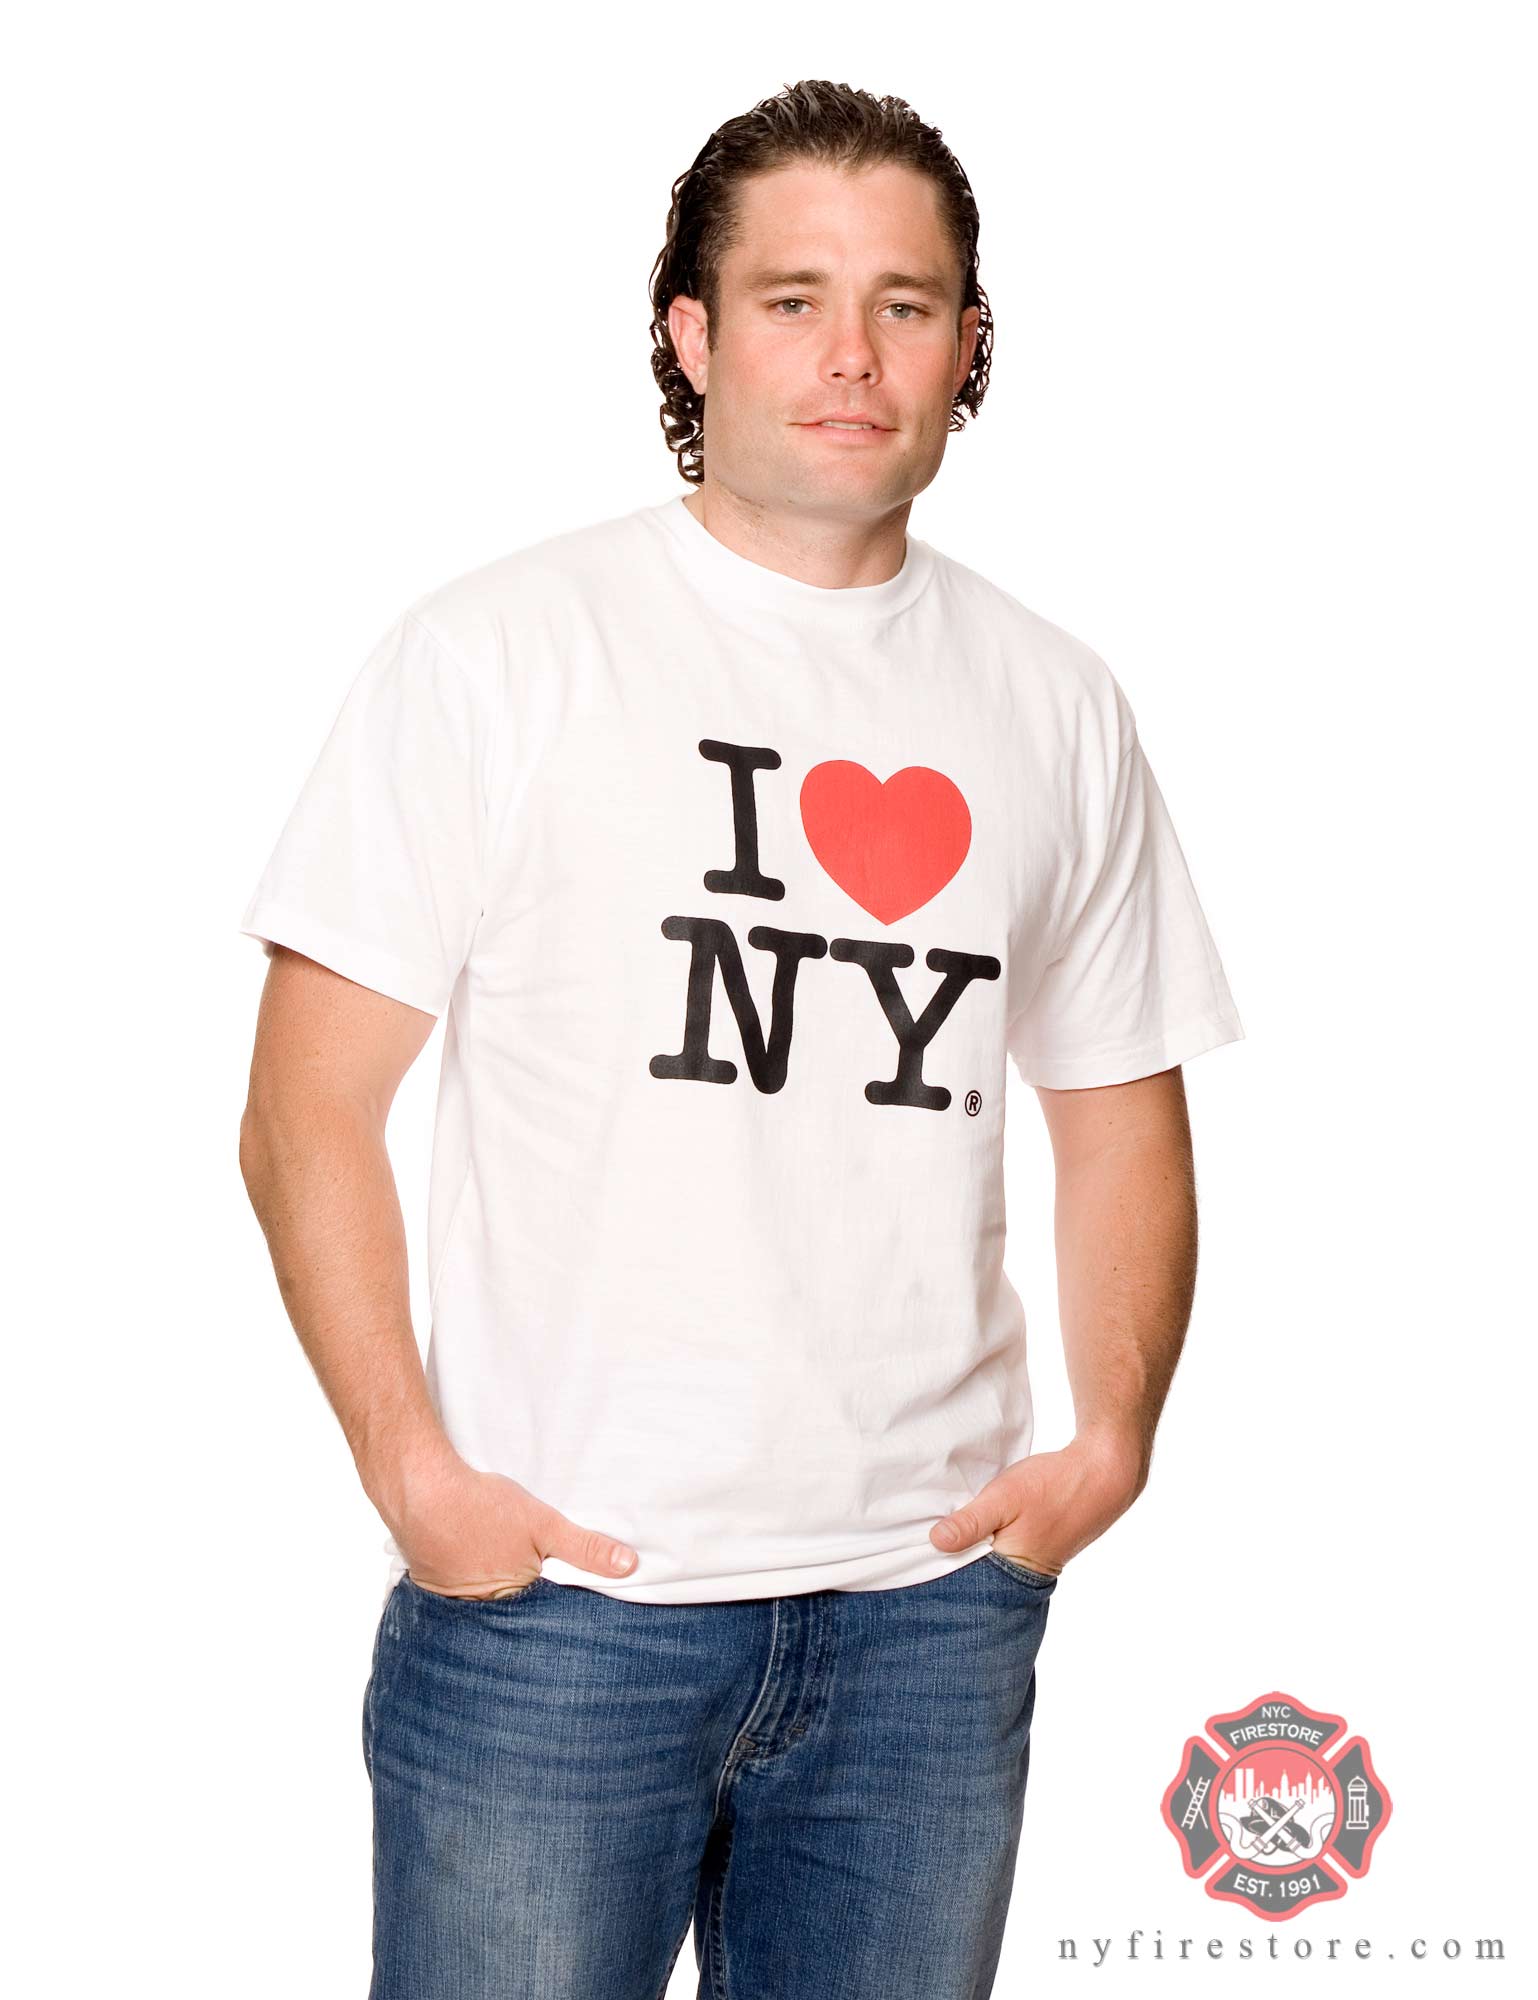 I NY T-Shirt